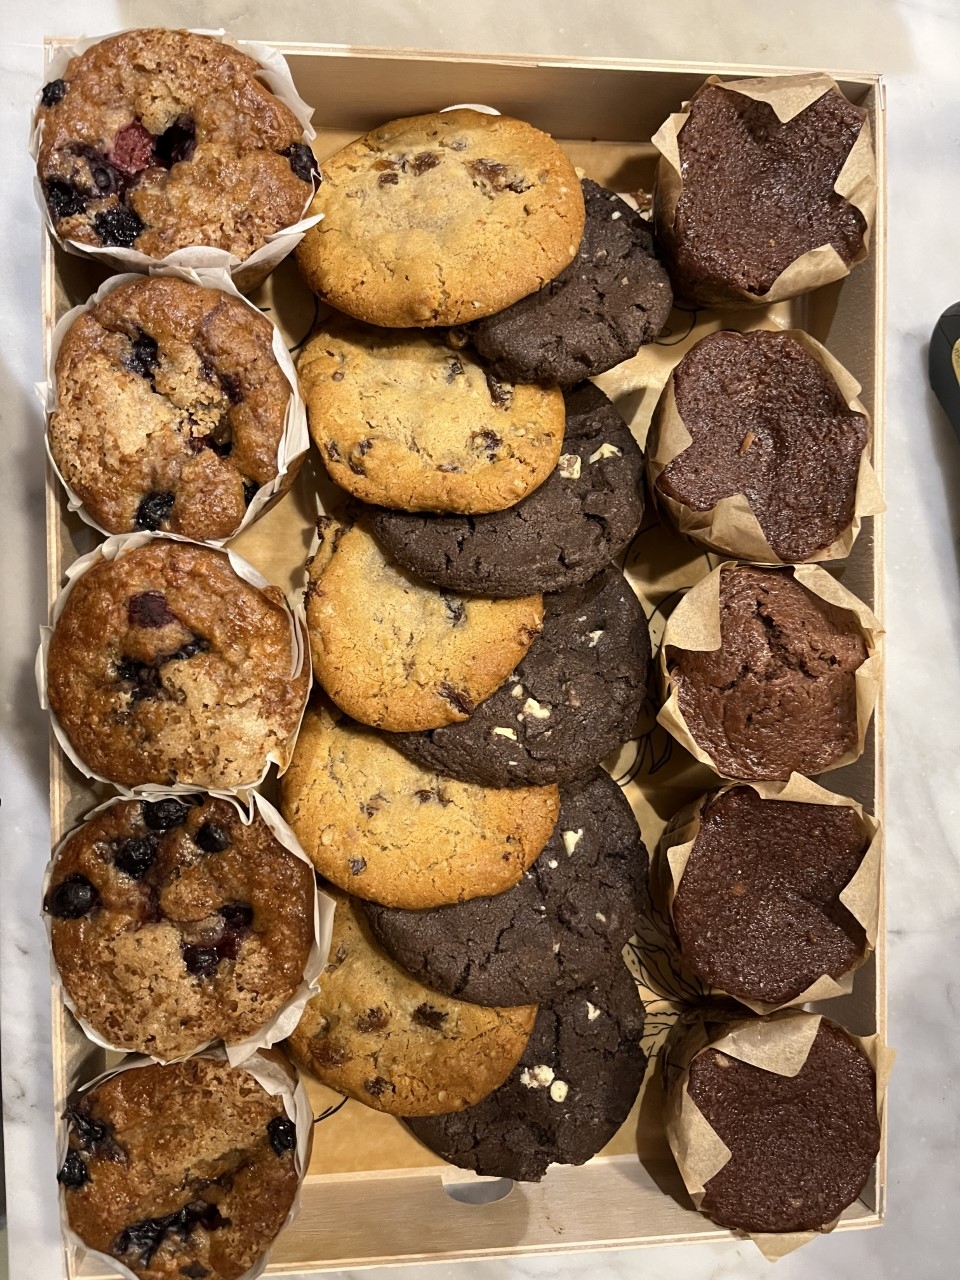 Plateau de cookies et muffins